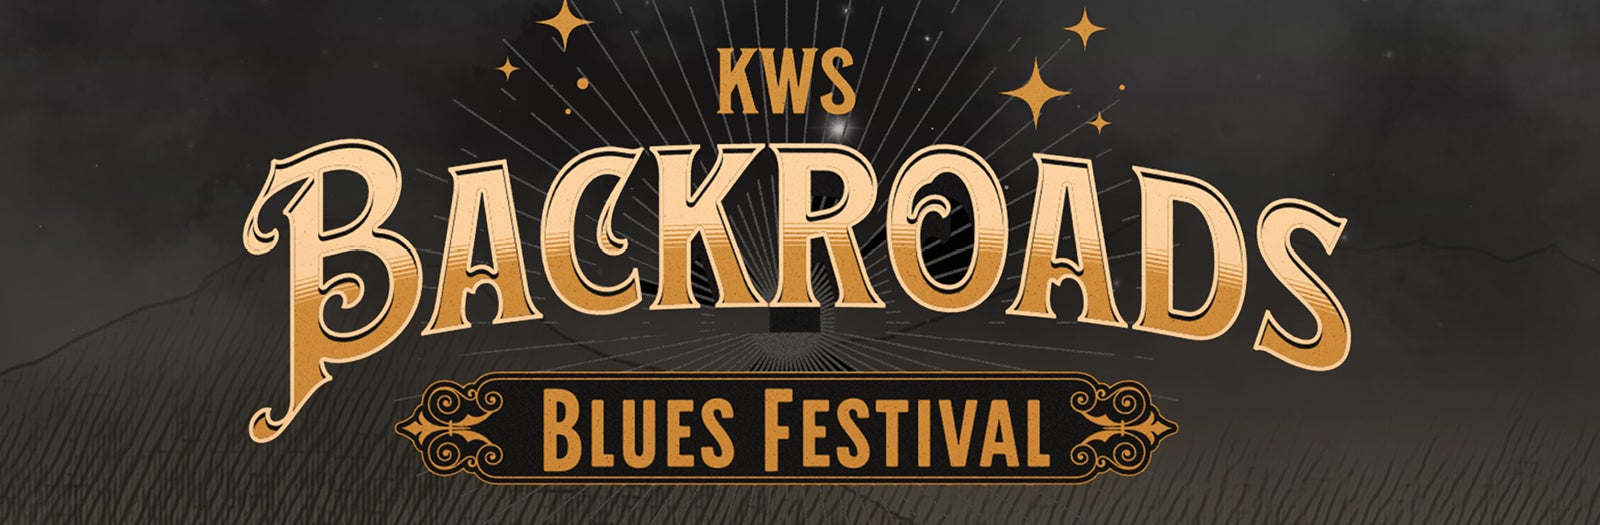 Backroads Blues Festival with Buddy Guy, Kenny Wayne Shepherd, and Christone “Kingfish” Ingram